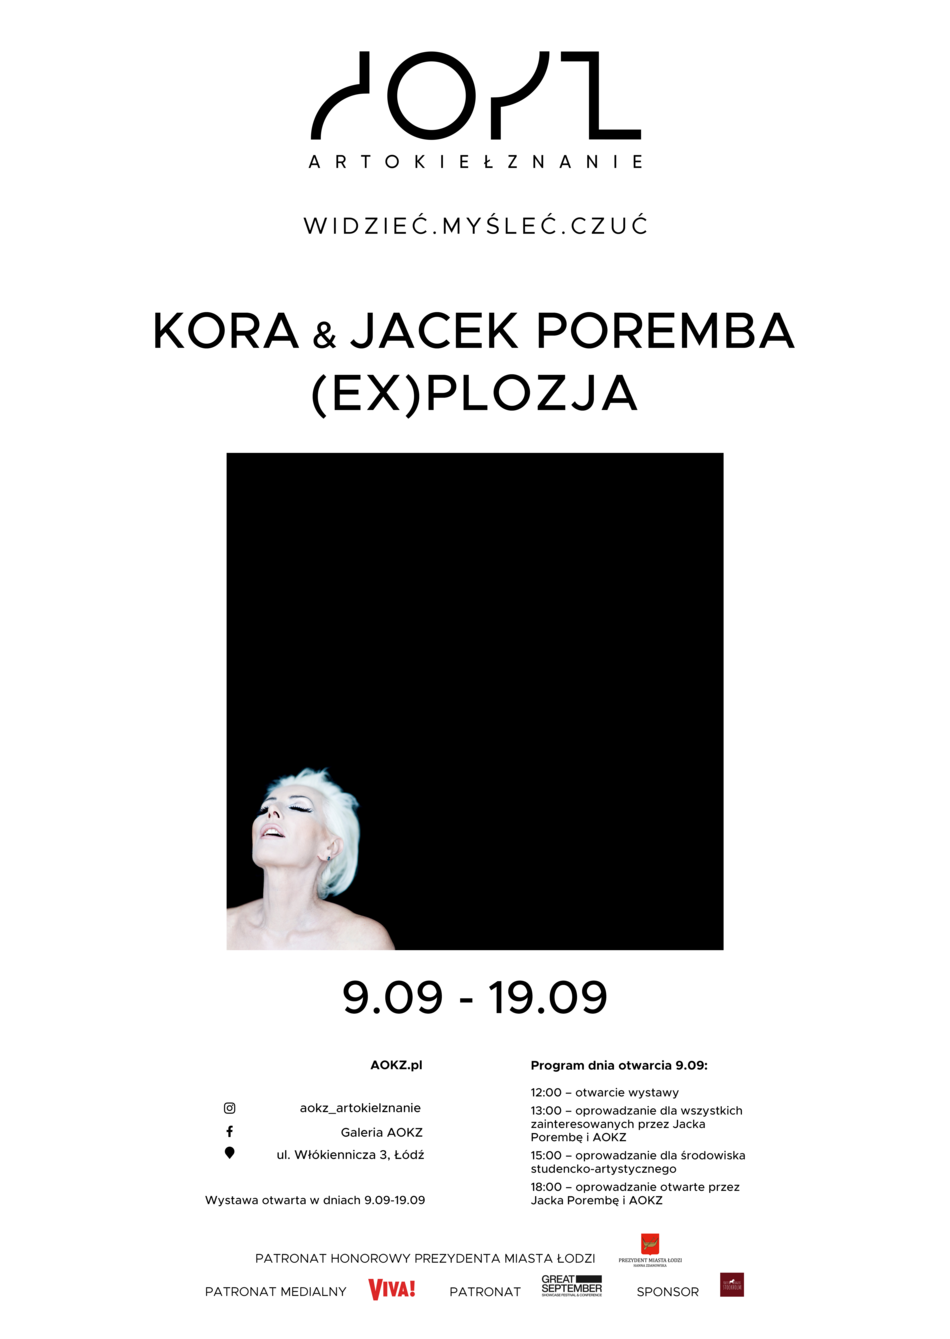 Wystawa zdjęć Kory autorstwa Jacka Poremby w Łodzi